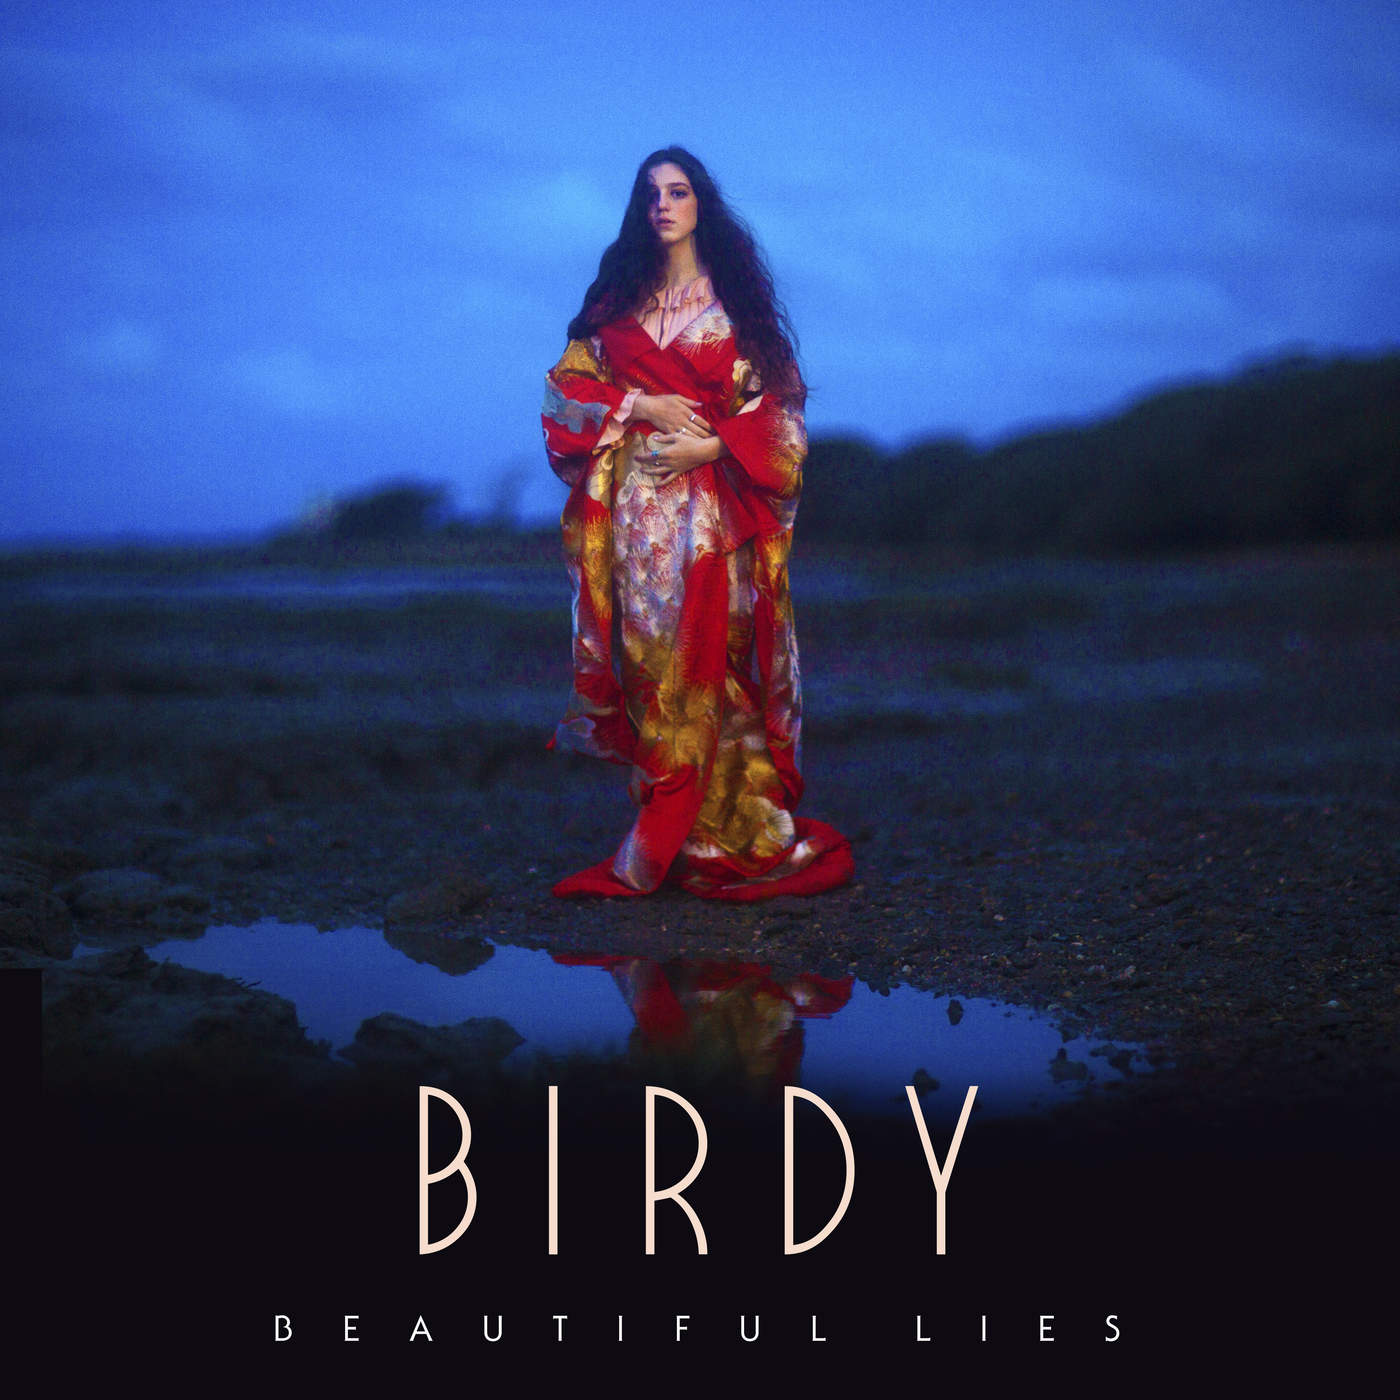 Birdy Beautiful lies